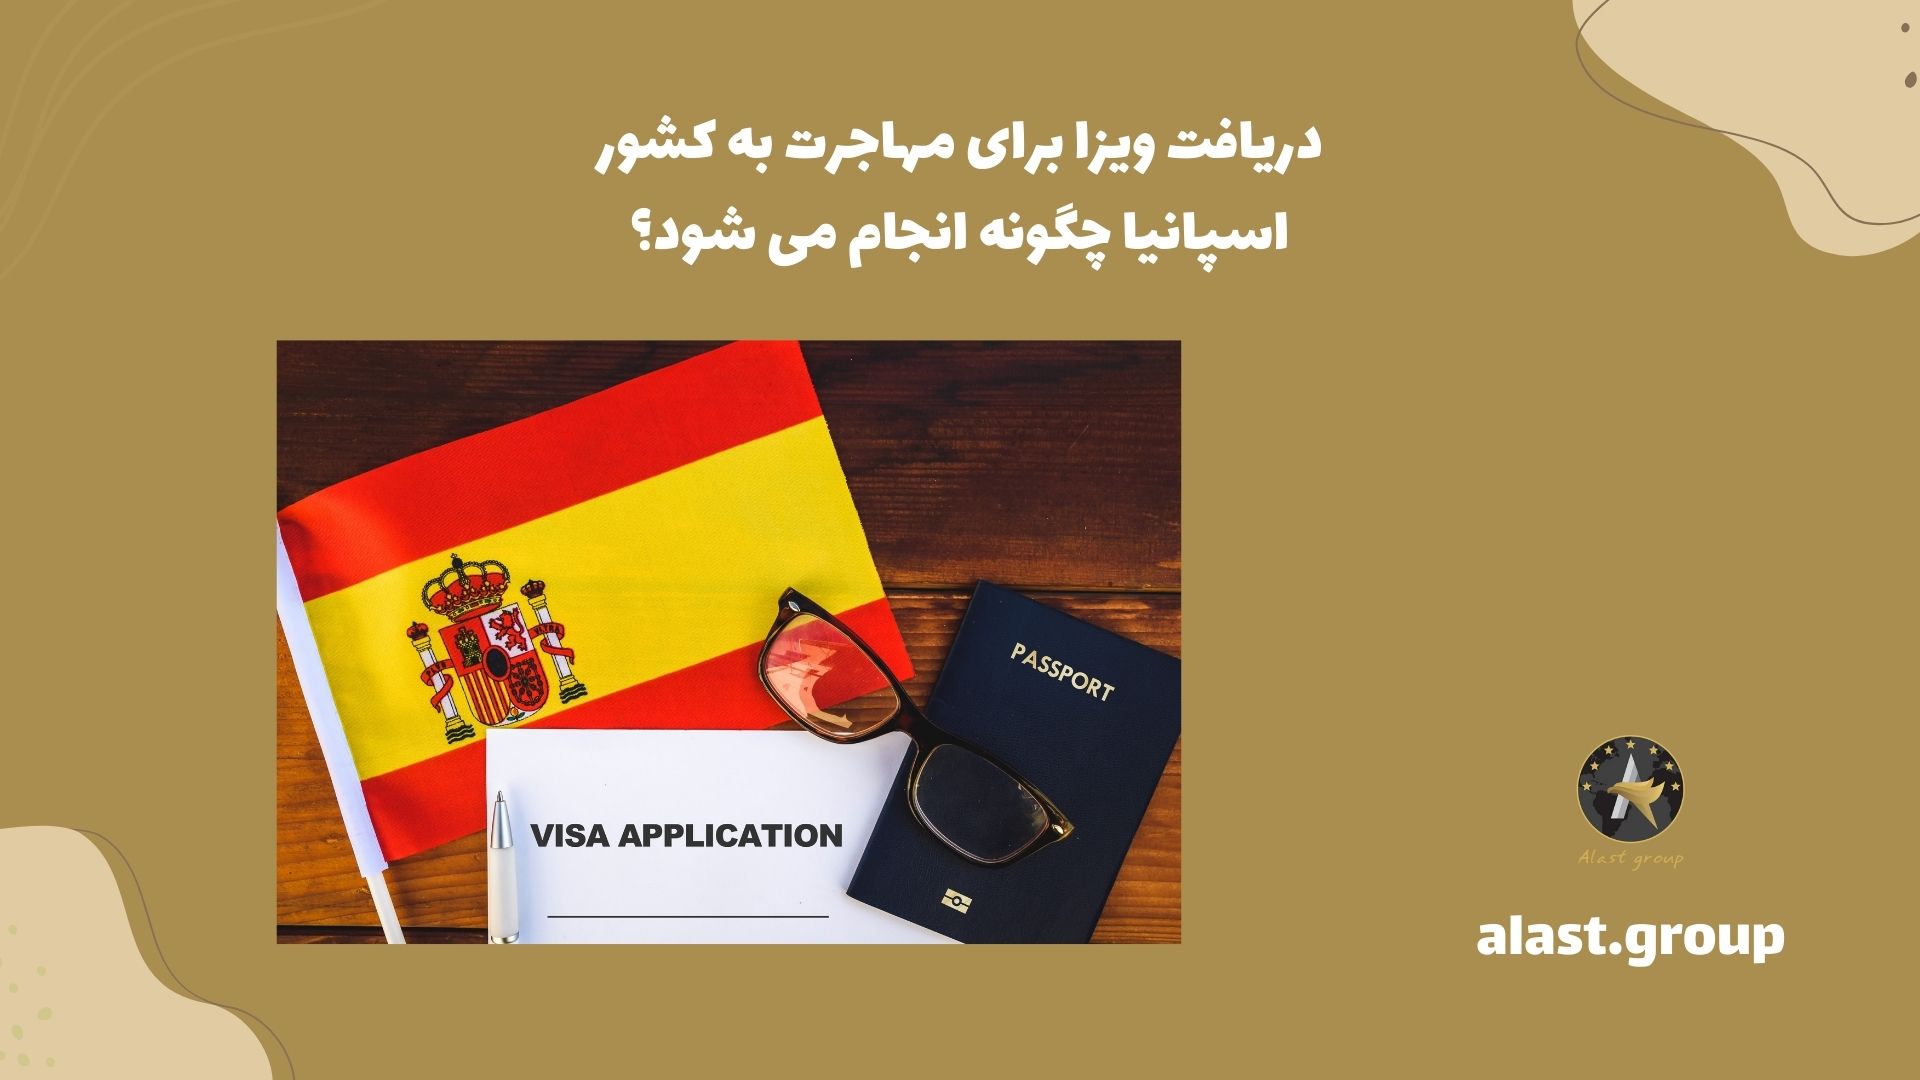 دریافت ویزا برای مهاجرت به کشور اسپانیا چگونه انجام می شود؟